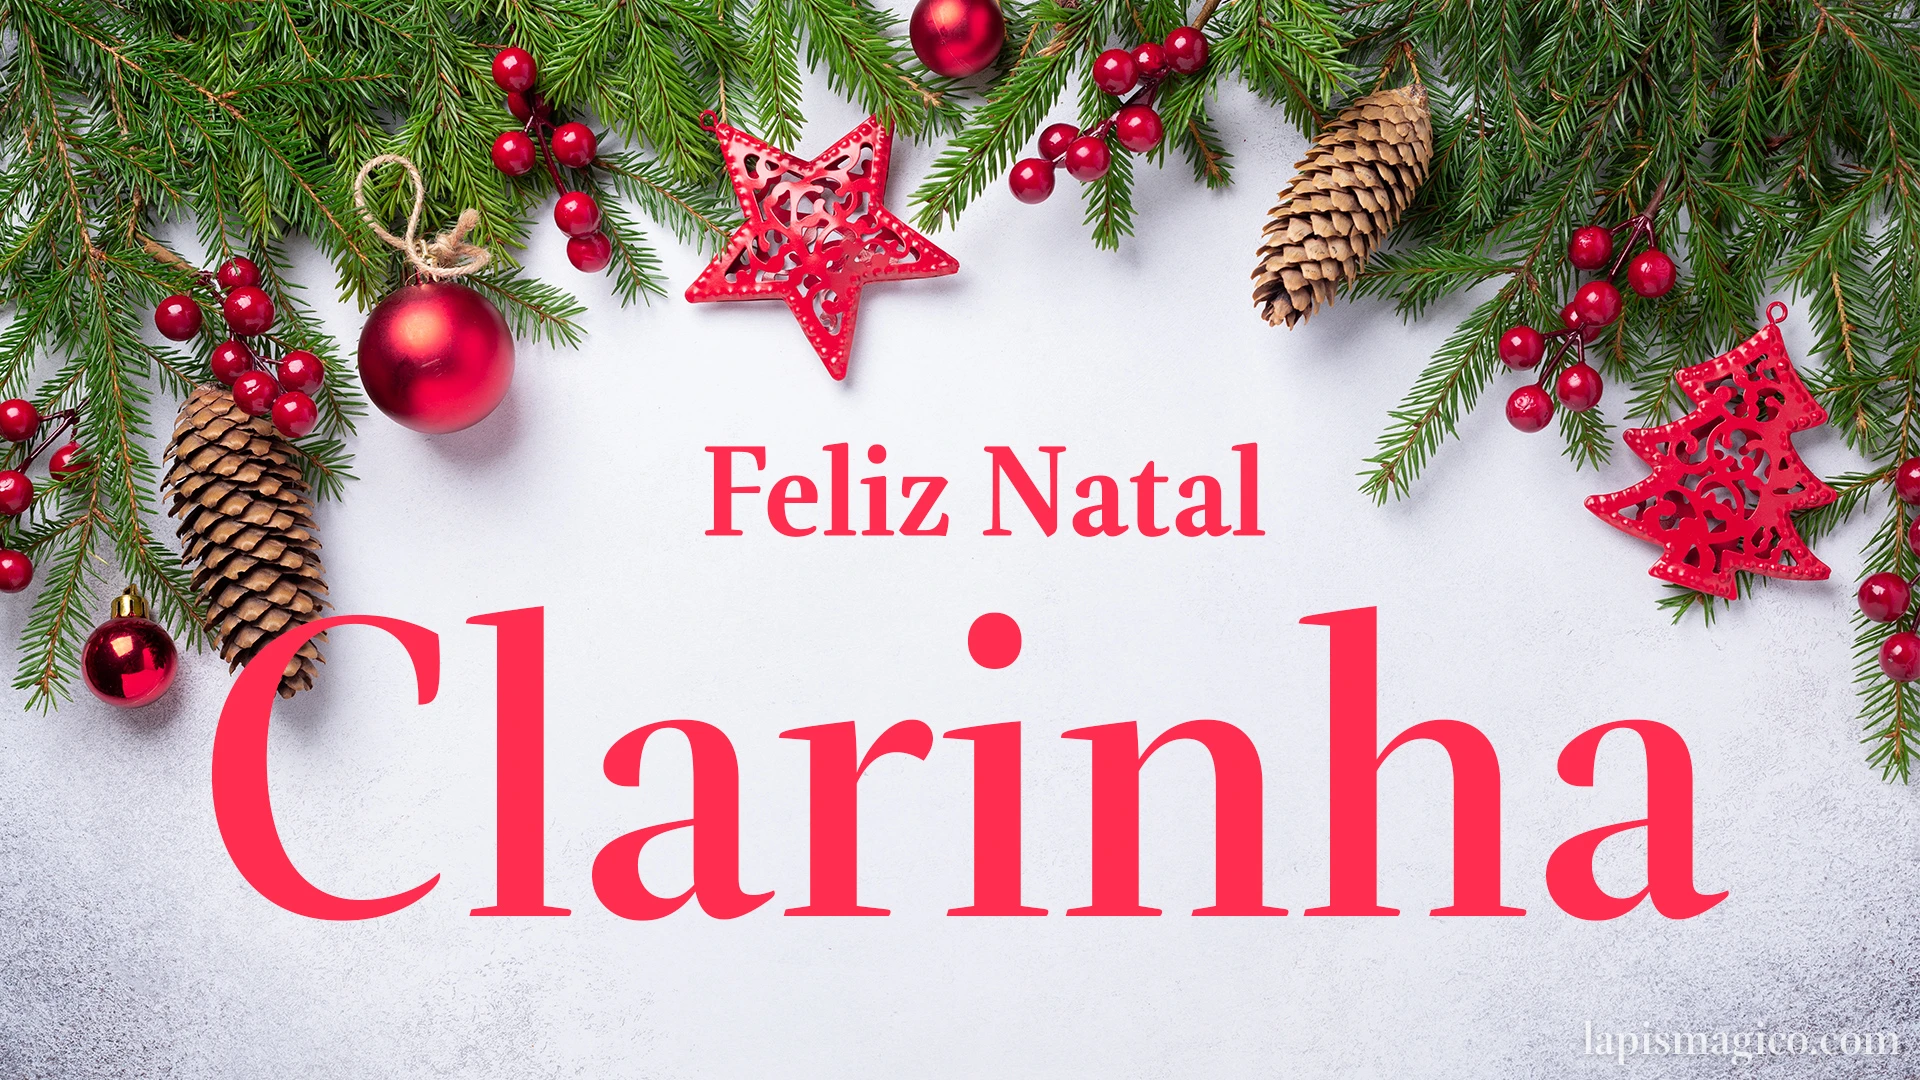 Oh Clarinha, cinco postais de Feliz Natal Postal com o teu nome